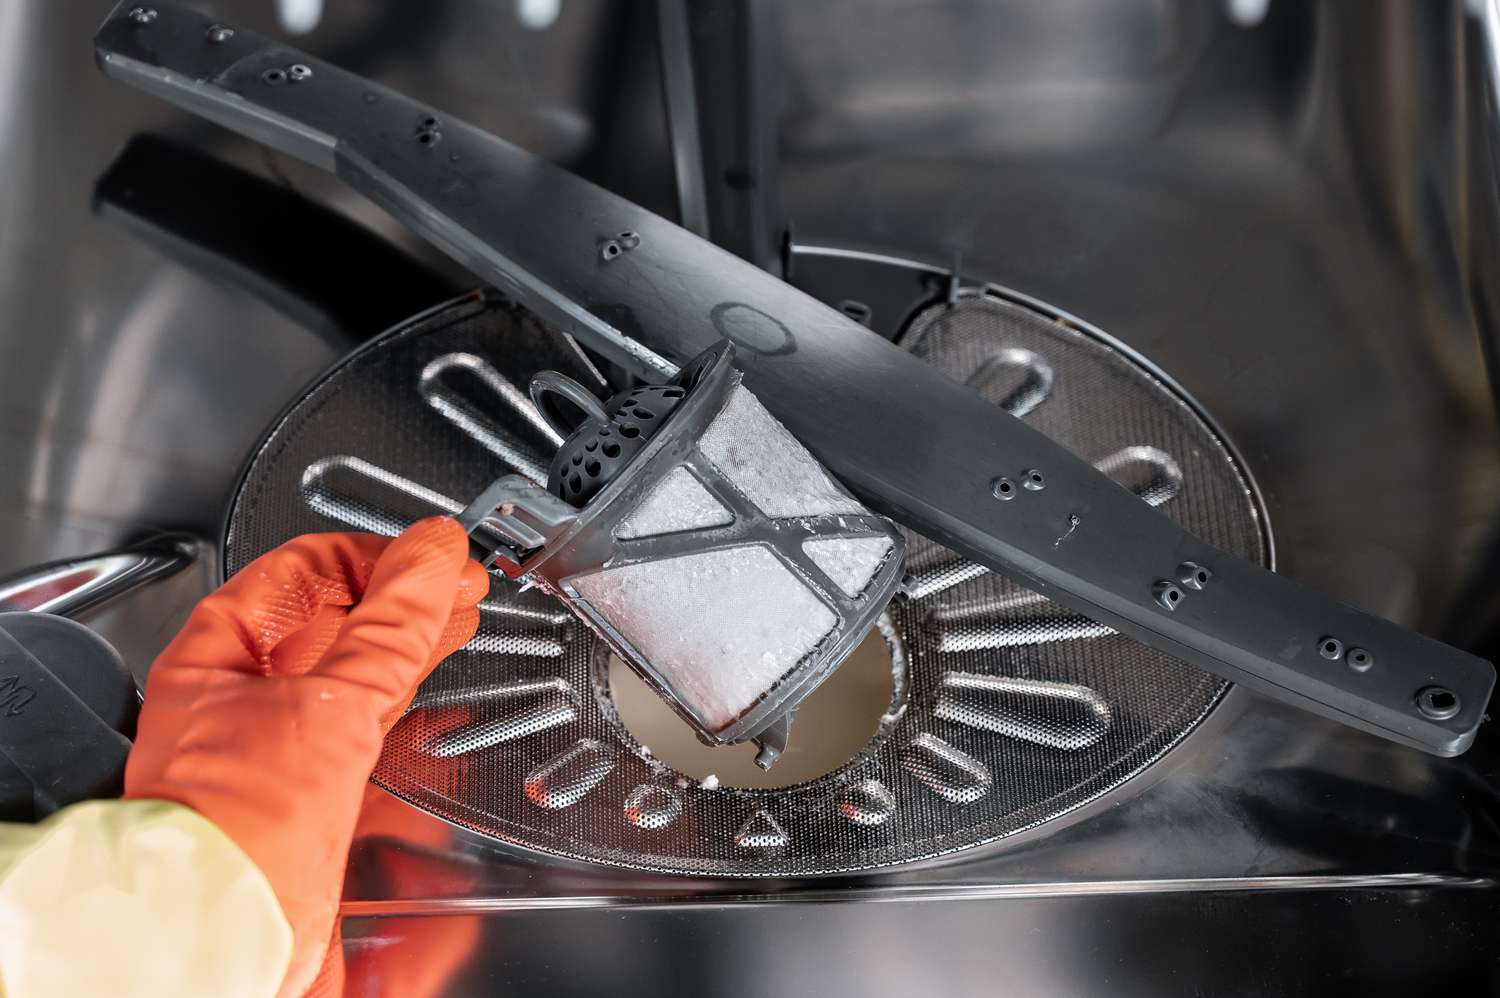 Filtro da máquina de lavar louça removido do filtro cilíndrico com luvas laranja